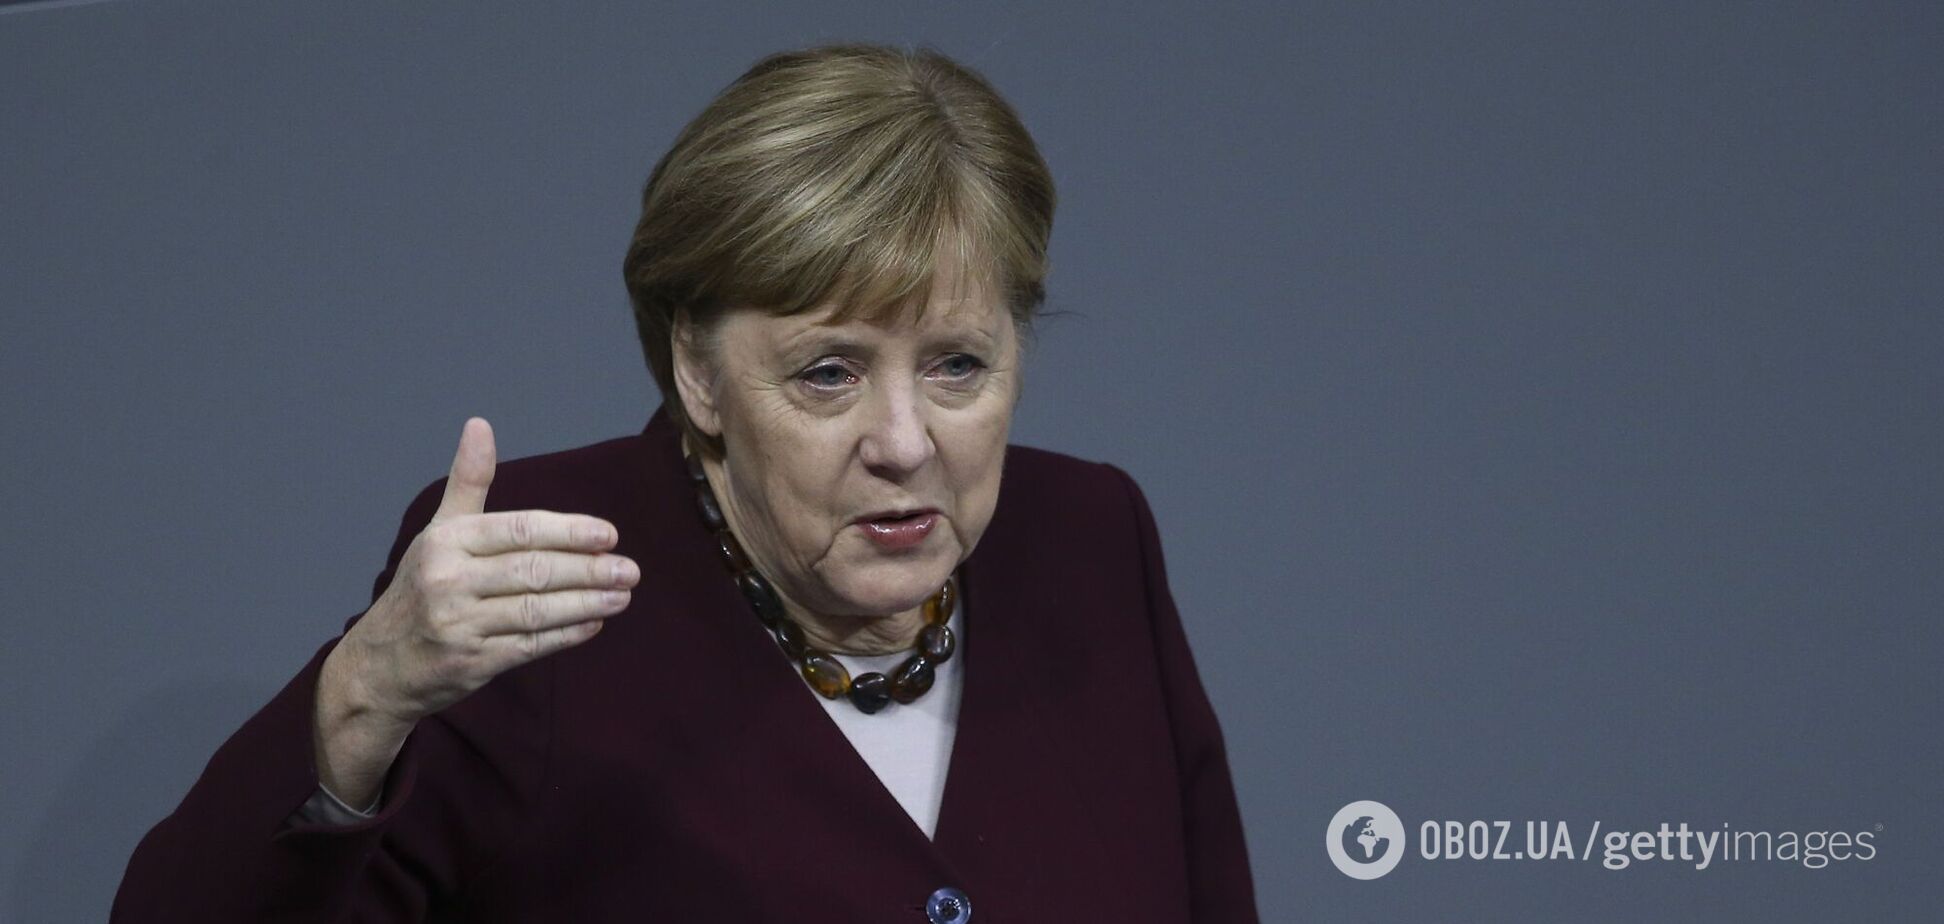 Партия Меркель исторически проиграла выборы в двух регионах Германии и нашла виновных